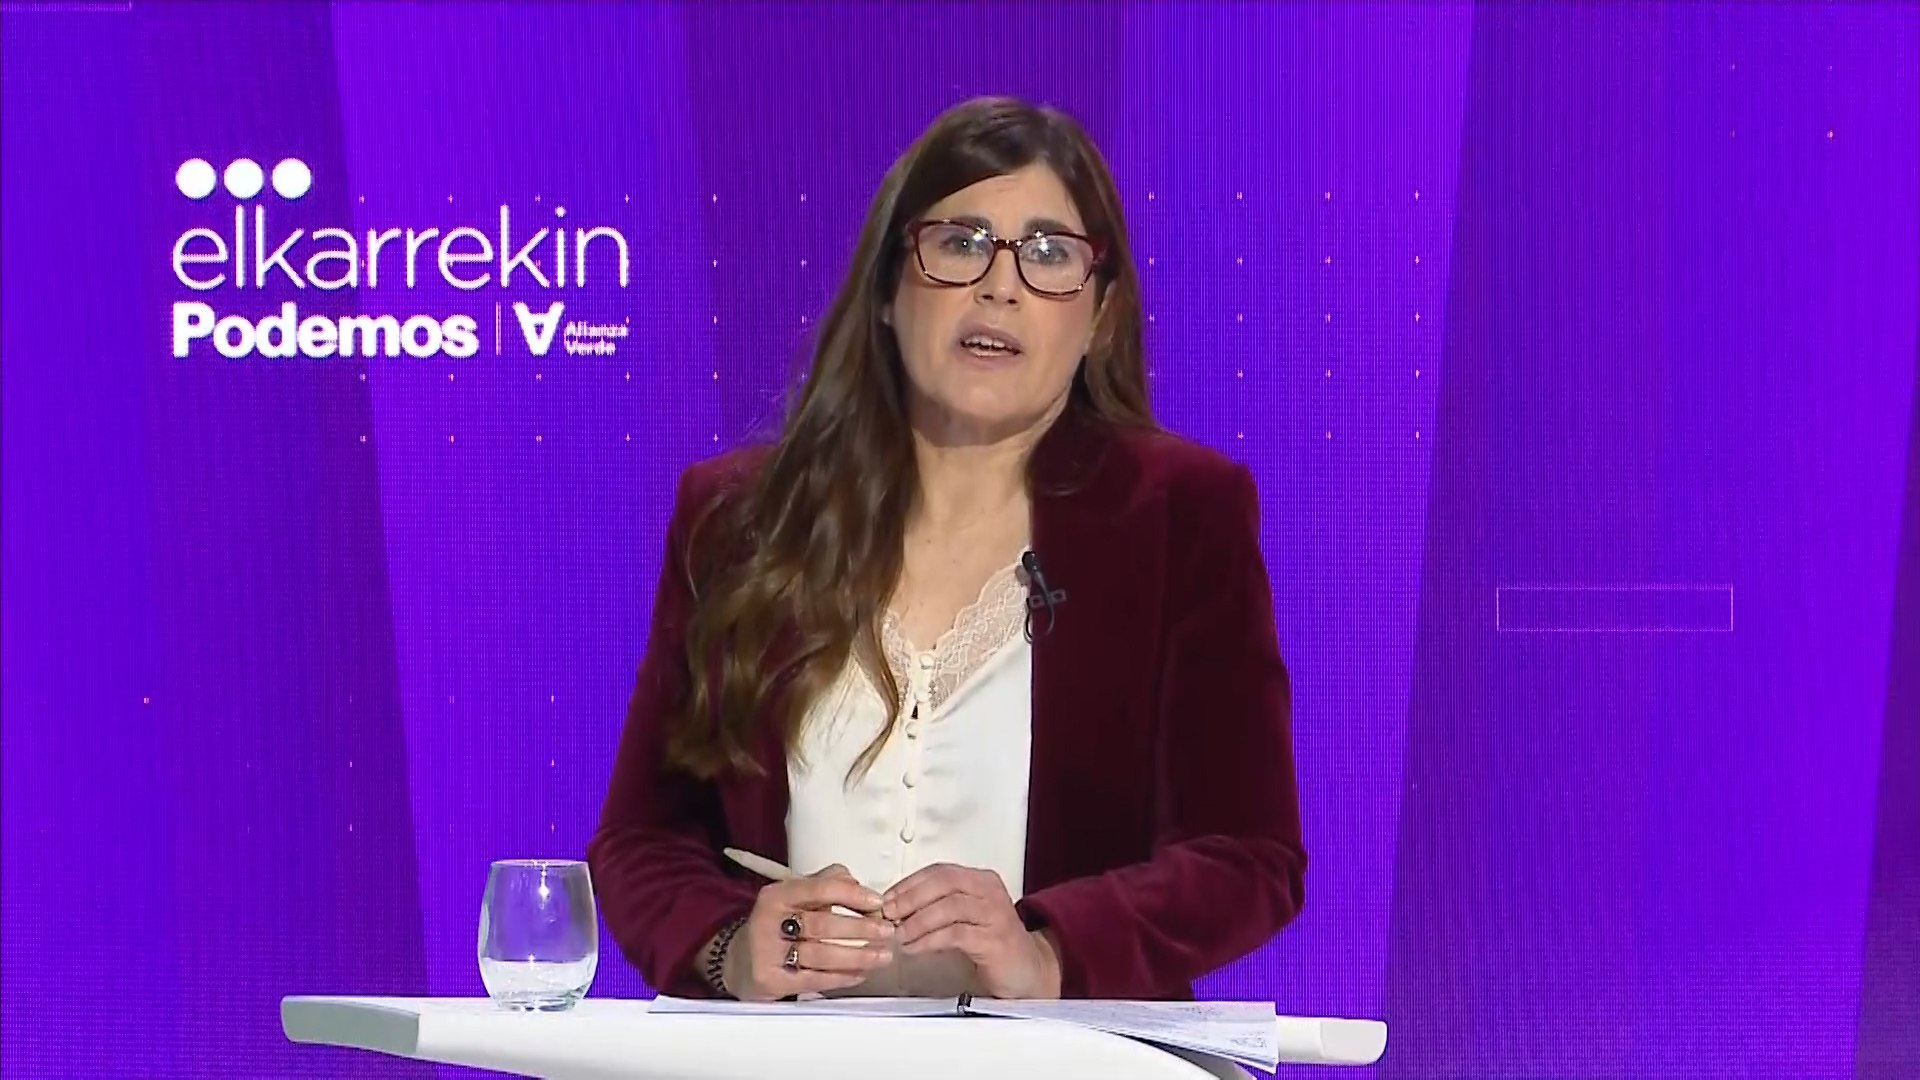 Alegato final de Elkarrekin Podemos en el debate de las elecciones del Pas Vasco